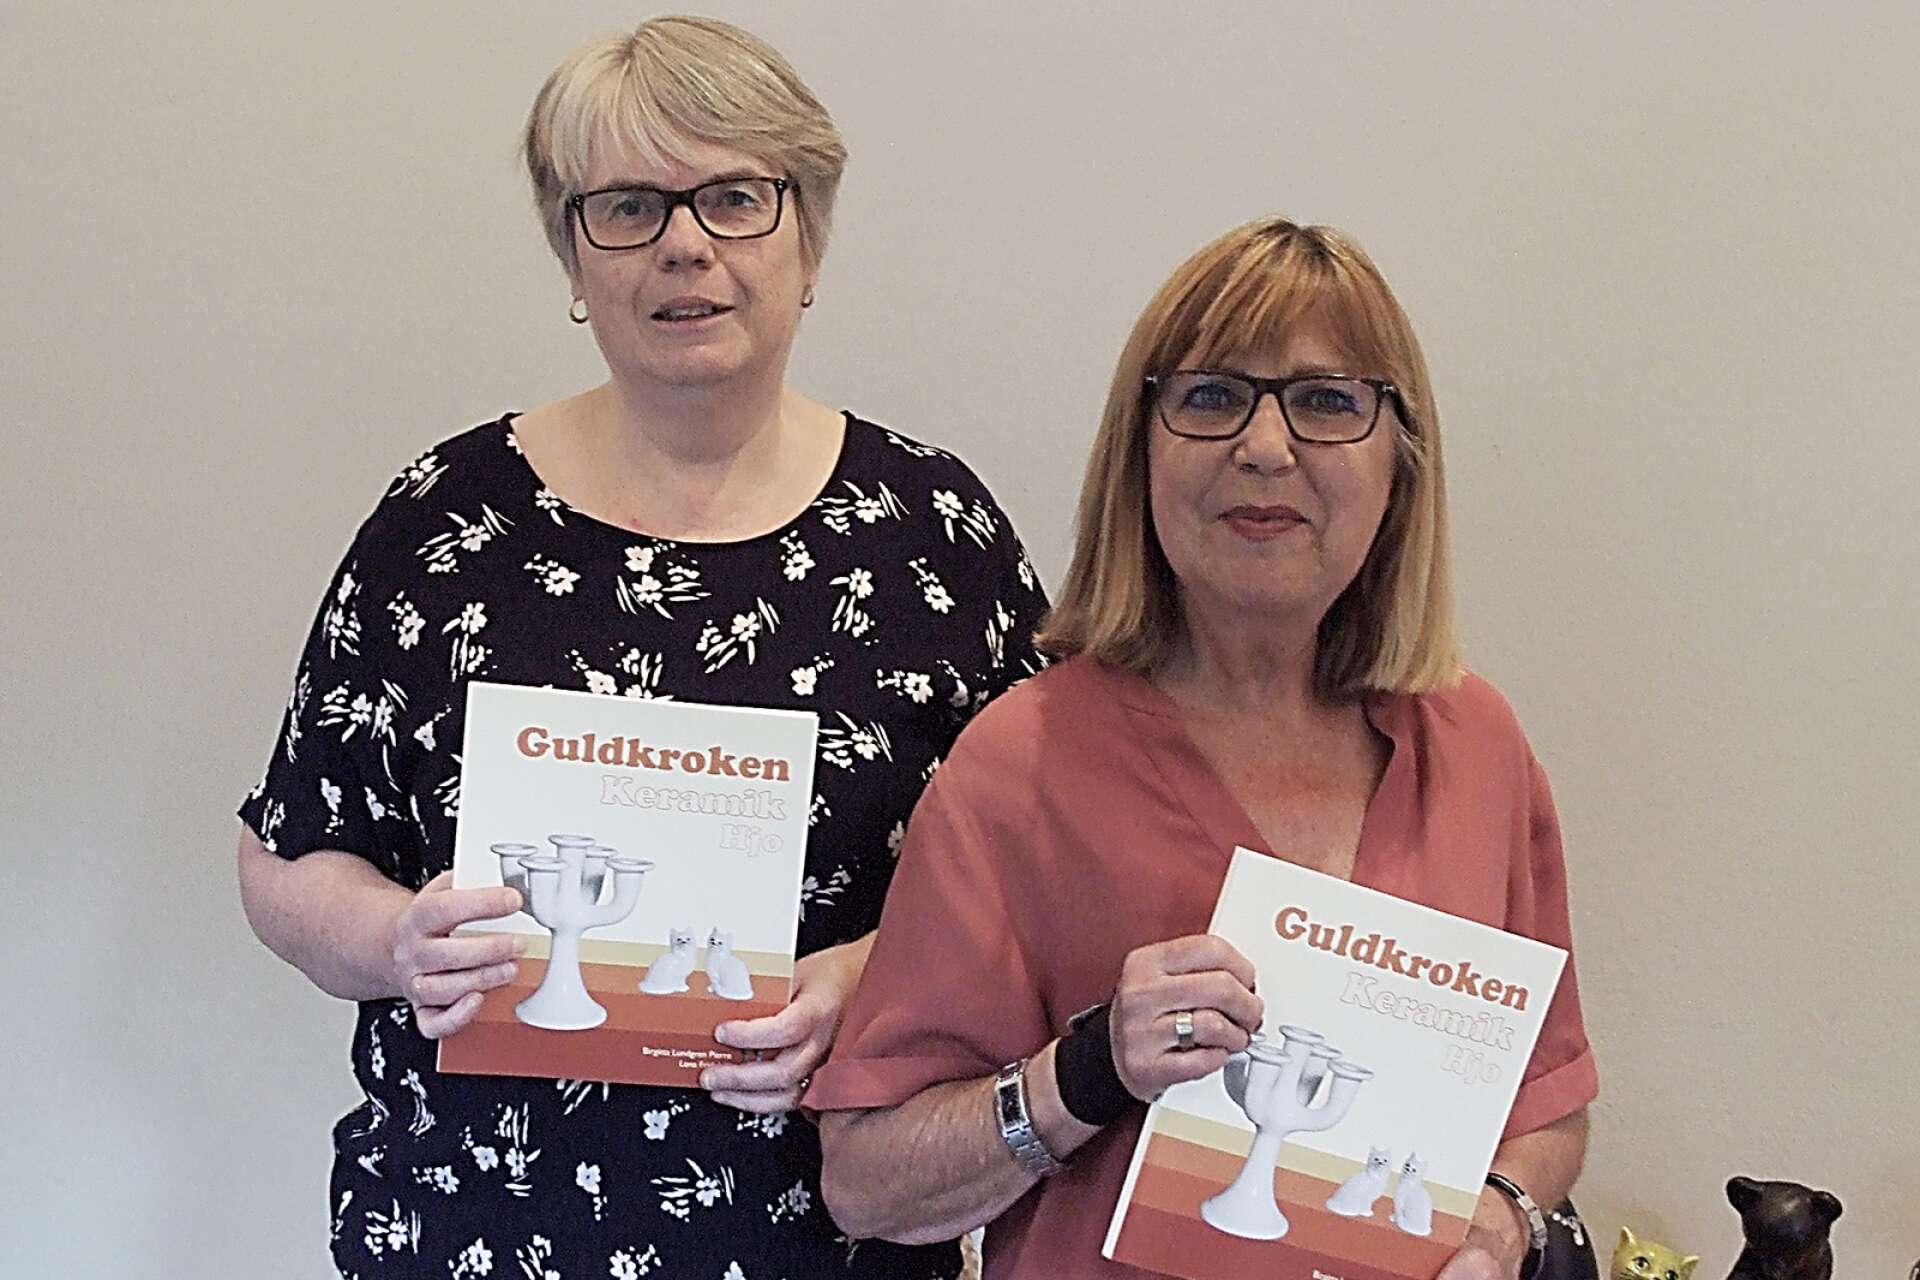 Lena Fridehäll och Birgitta Lundgren Pierre har jobbat hårt de senaste åren med att sammanställa guldkorn från historien om Guldkroken keramik. Nu är boken släppt.